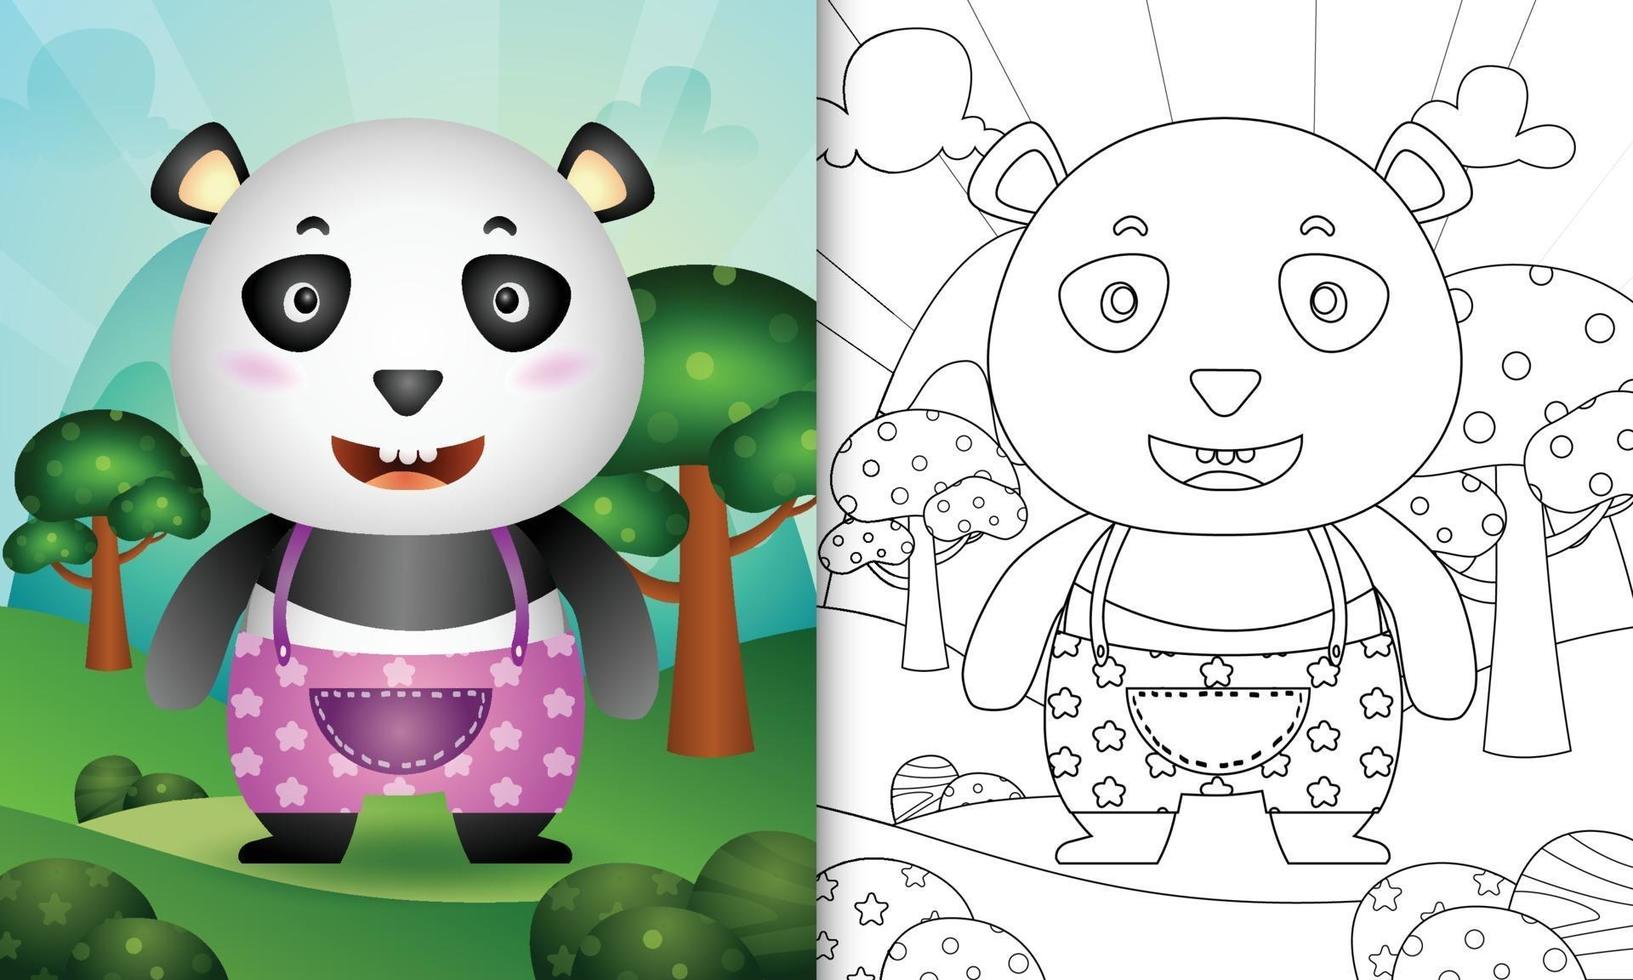 kleurboeksjabloon voor kinderen met een schattige pandakarakterillustratie vector